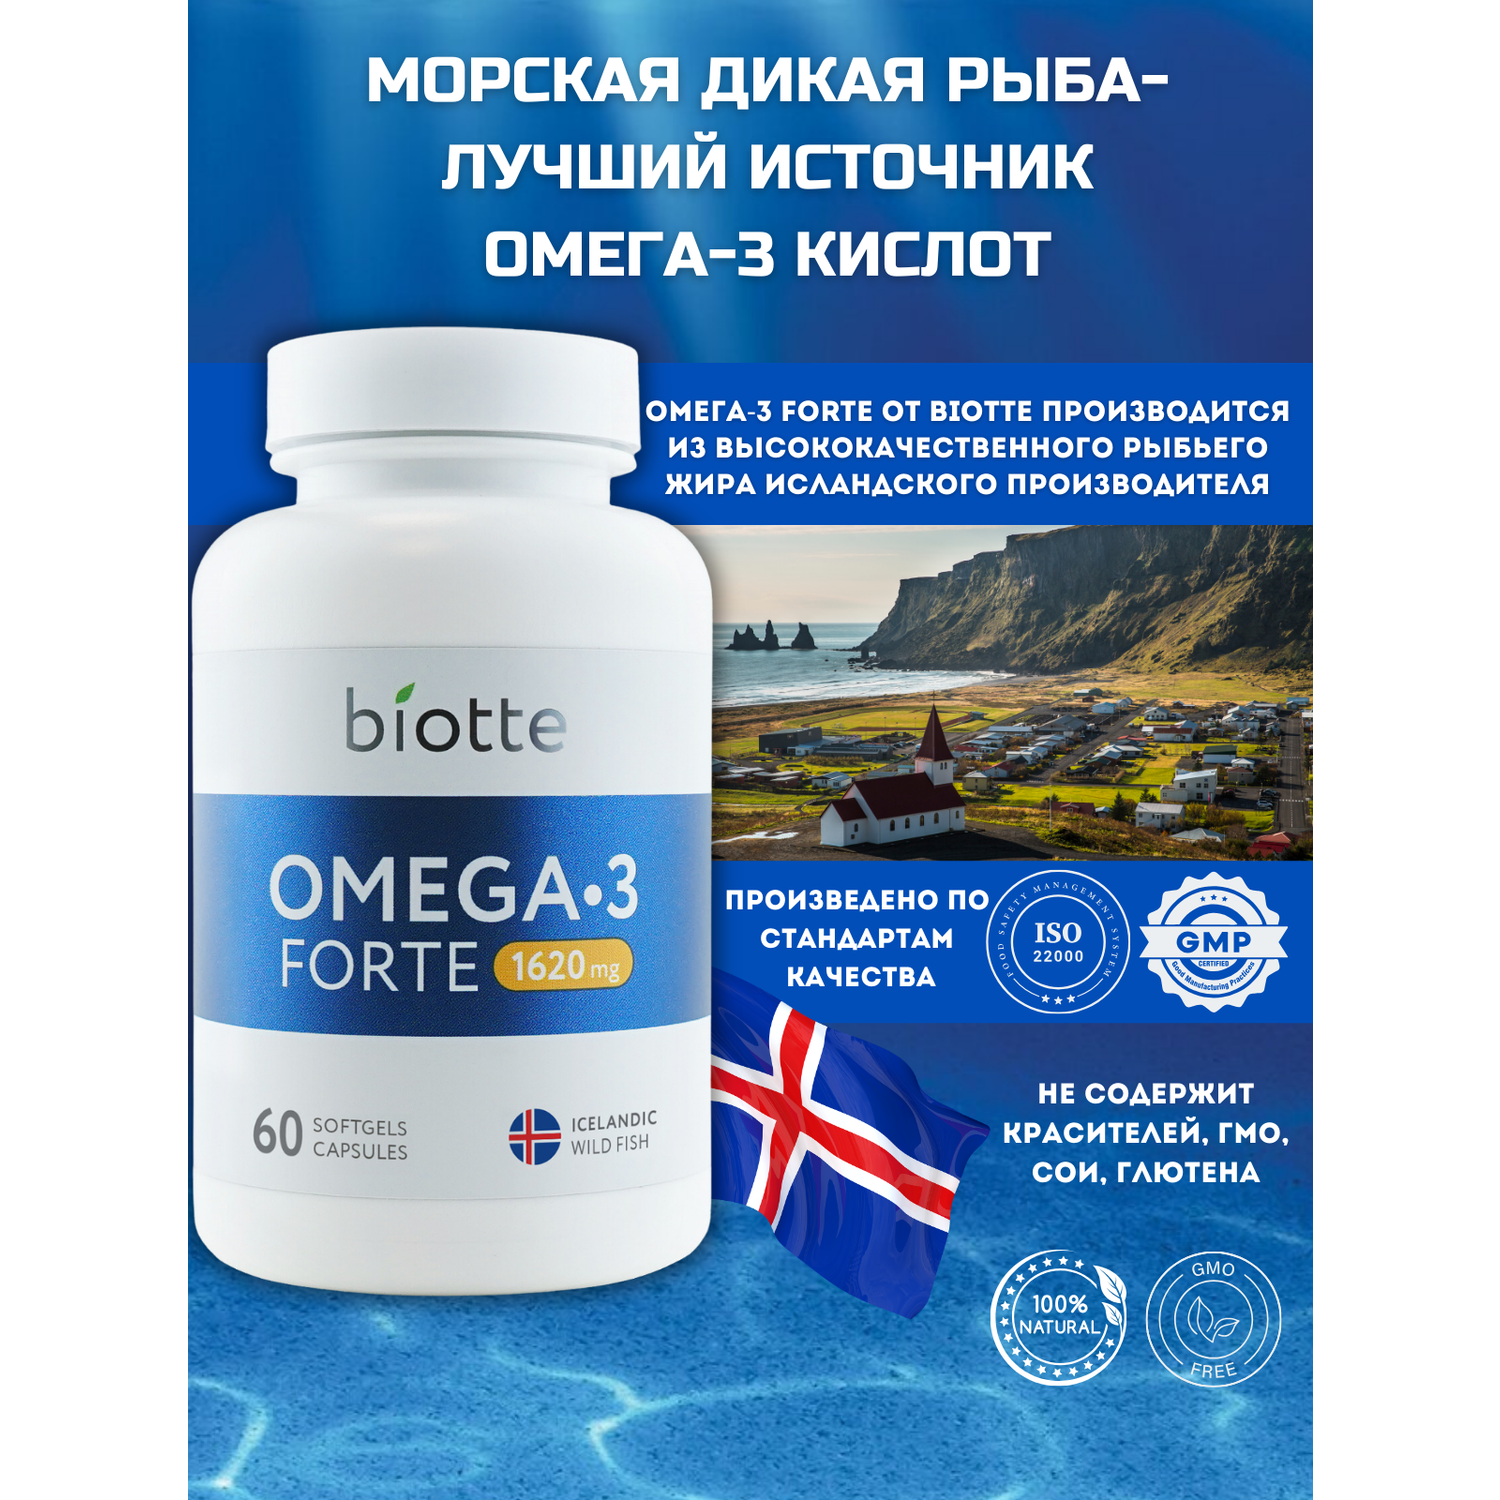 Омега-3 форте в капсулах BIOTTE премиальный рыбий жир для взрослых и подростков 180 капсул - фото 8